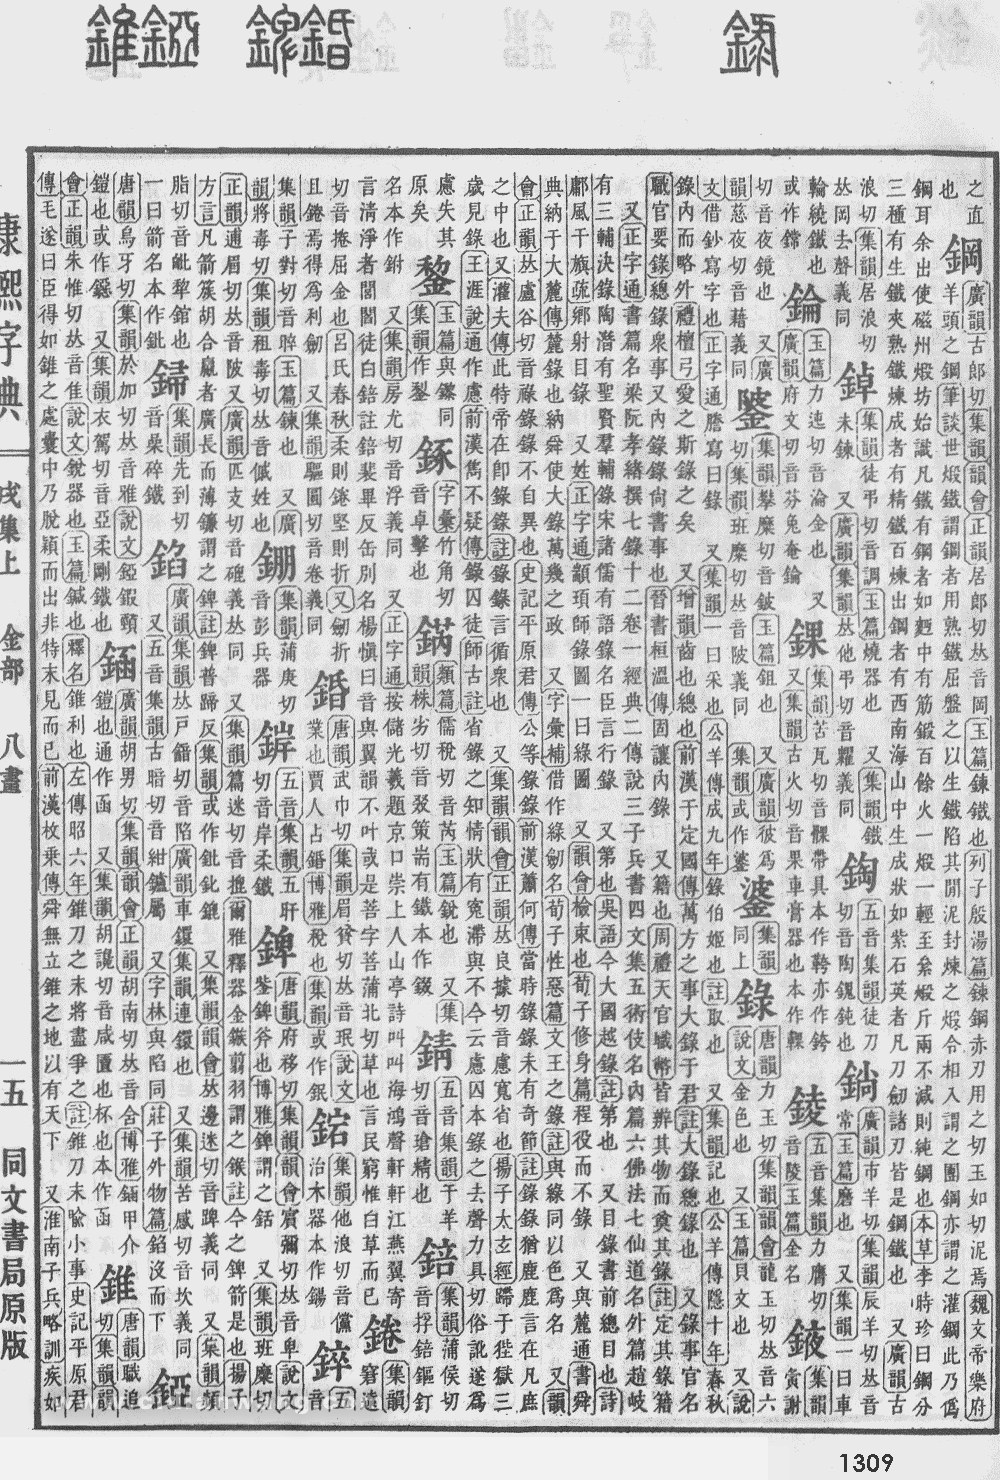 康熙字典掃描版第1309頁